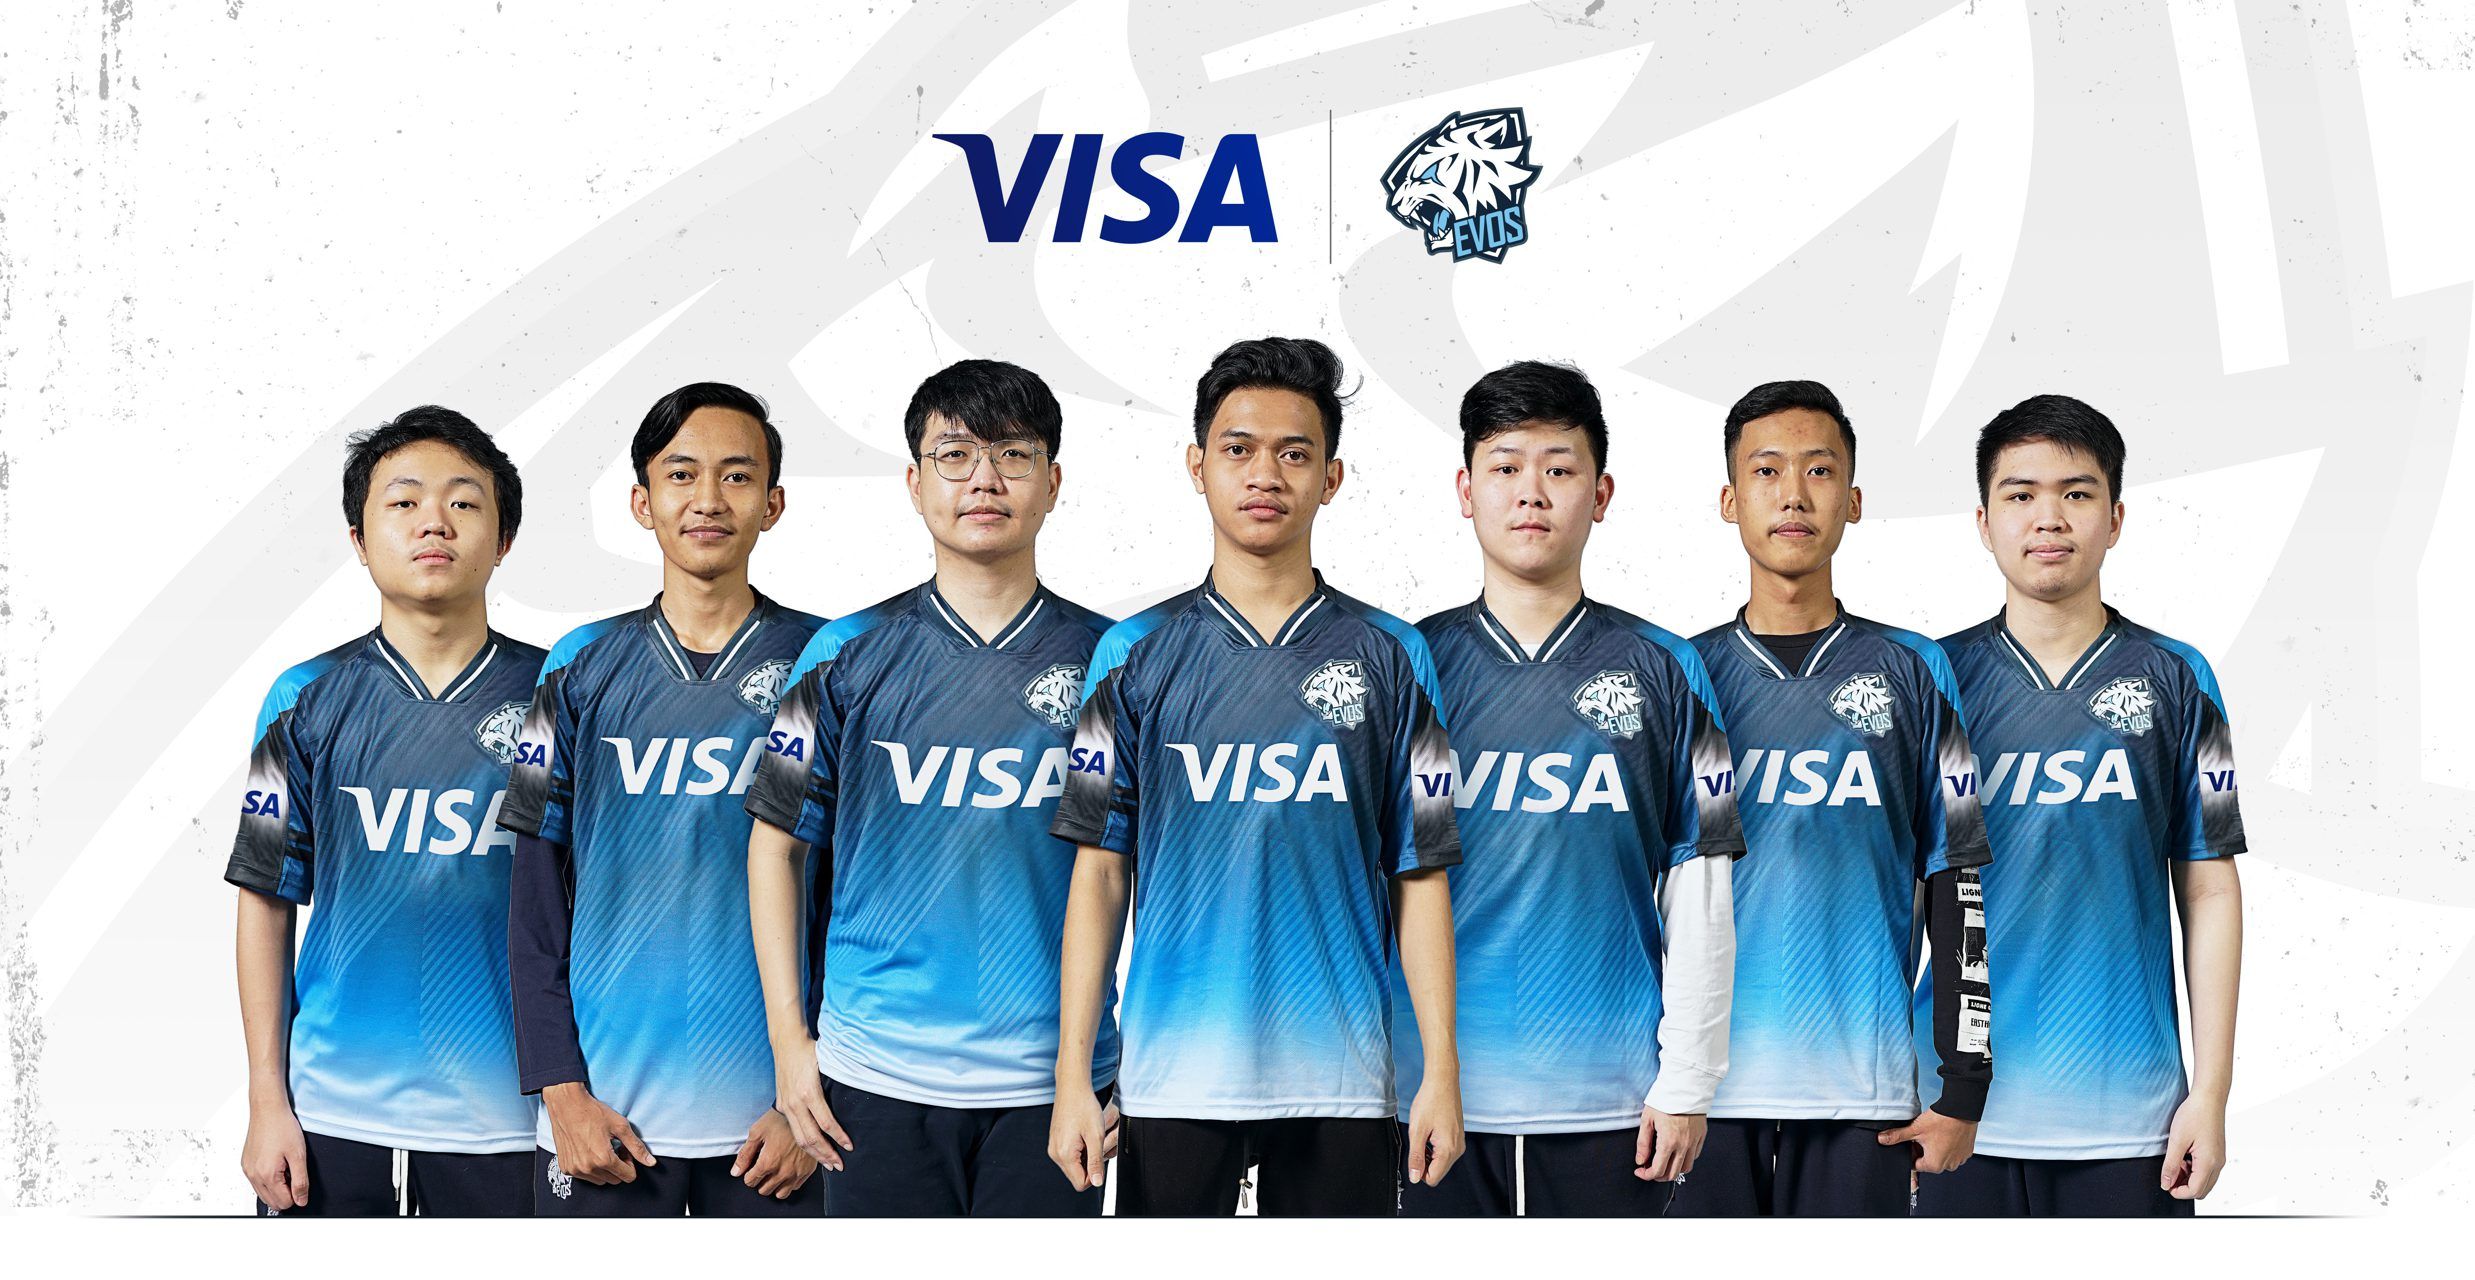 Visa Announces First Esports Foray Through a Collaboration with EVOS Esports